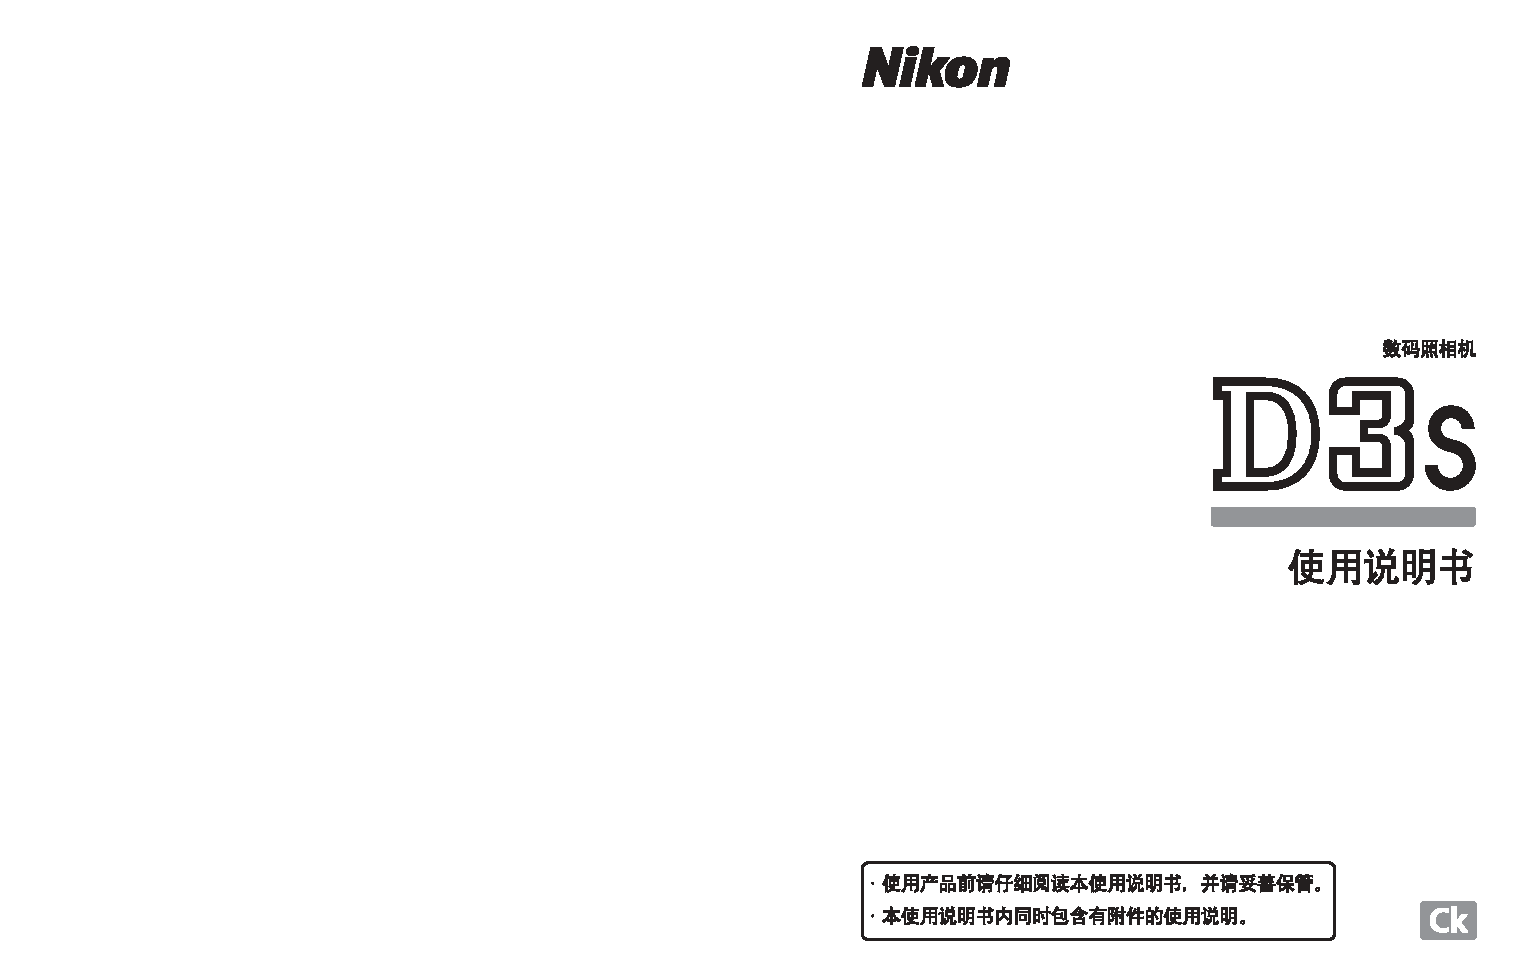 尼康 Nikon D3S 使用说明书 封面